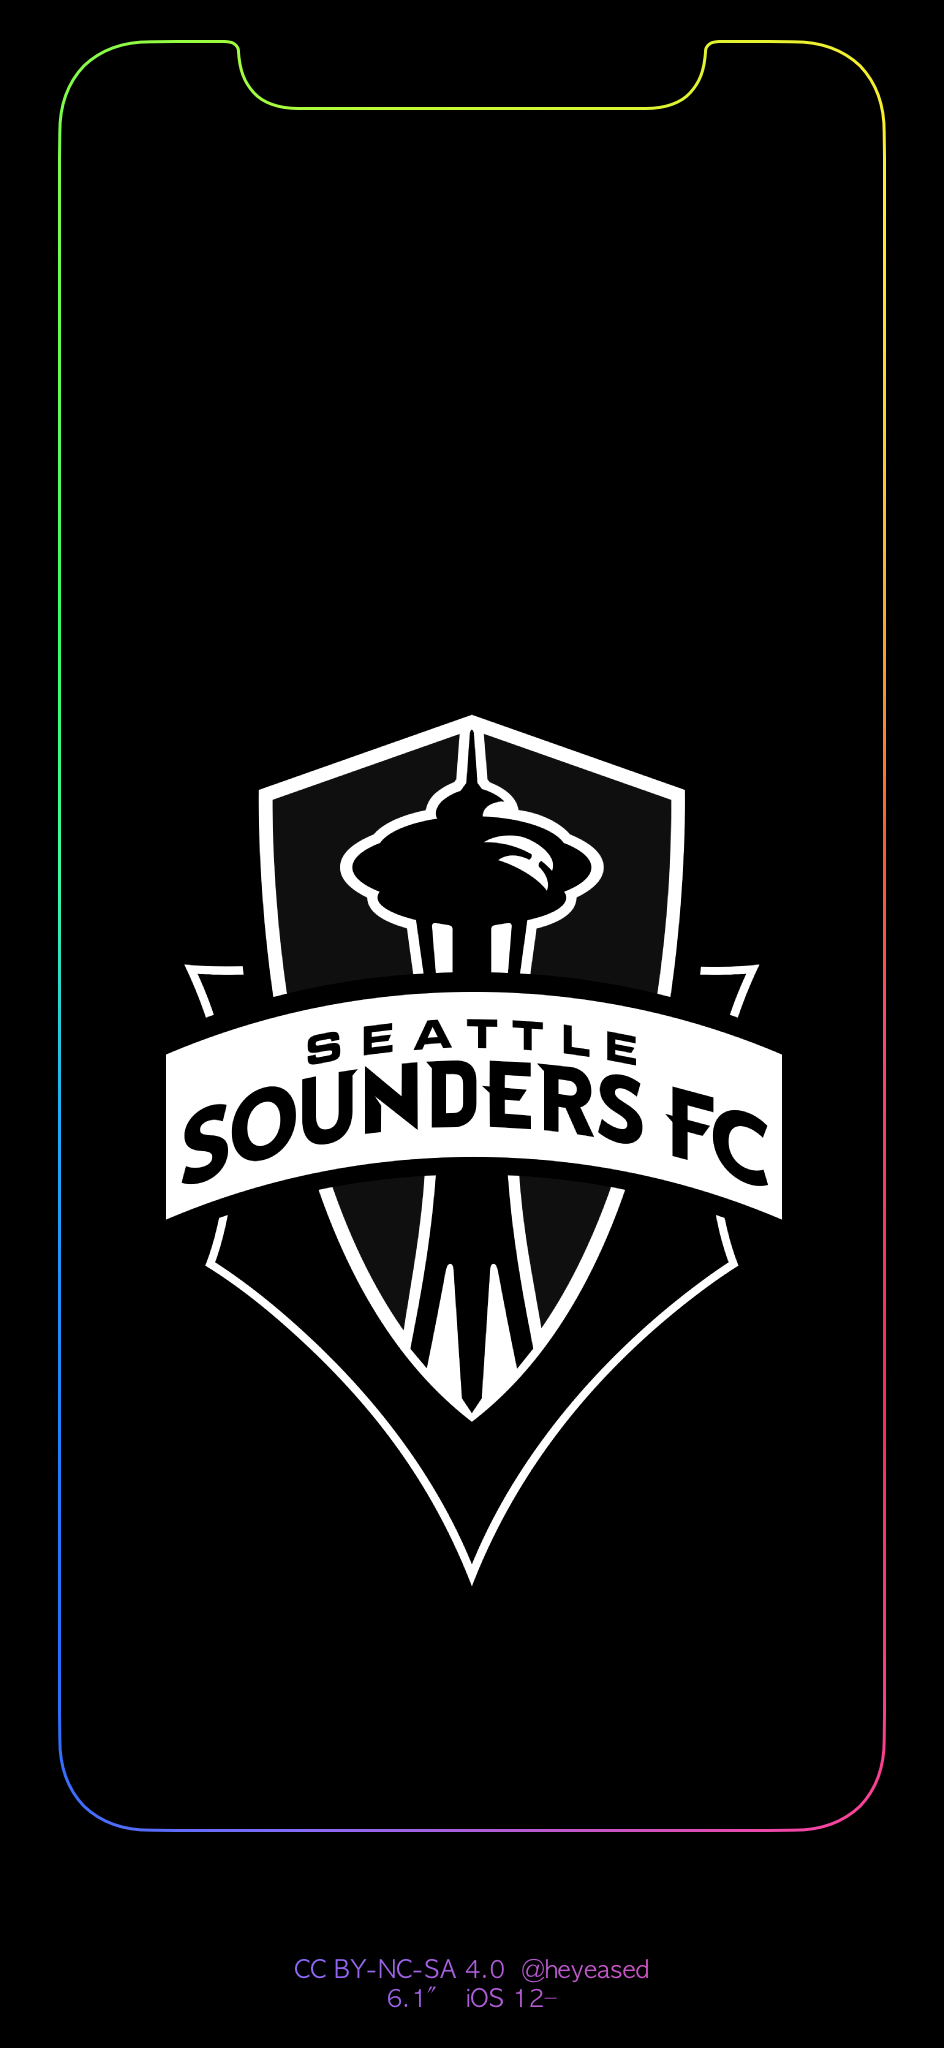 Seattle Sounders Wallpaper Iphone - HD Wallpaper 